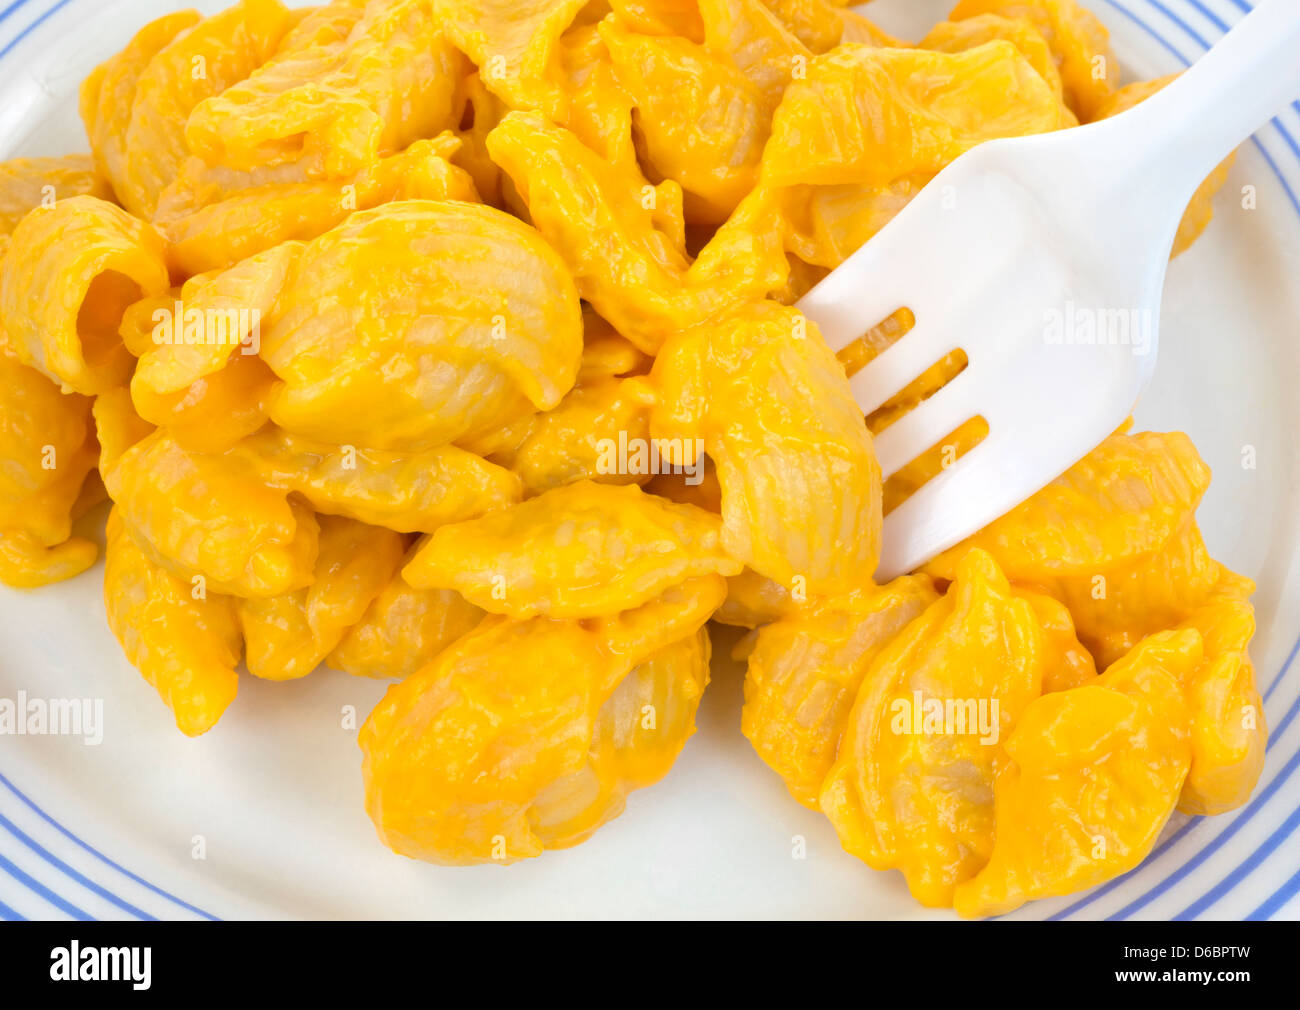 Molto vicino in vista di una piccola porzione di pasta conchiglie con salsa al formaggio su una piastra con una forcella di plastica. Foto Stock